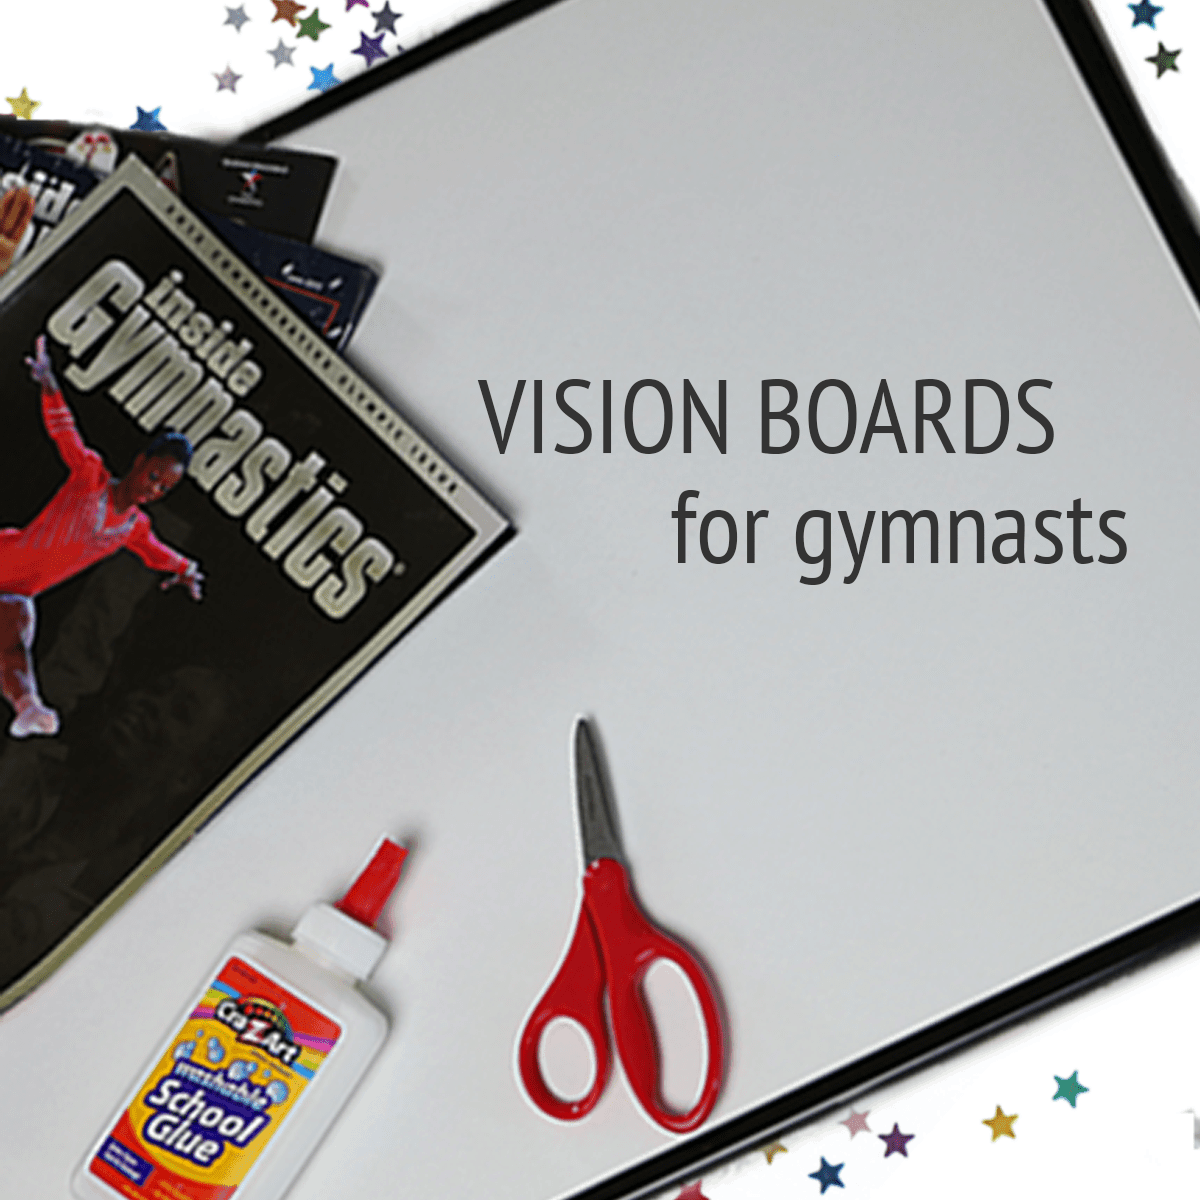 Gymnastics Vision Board